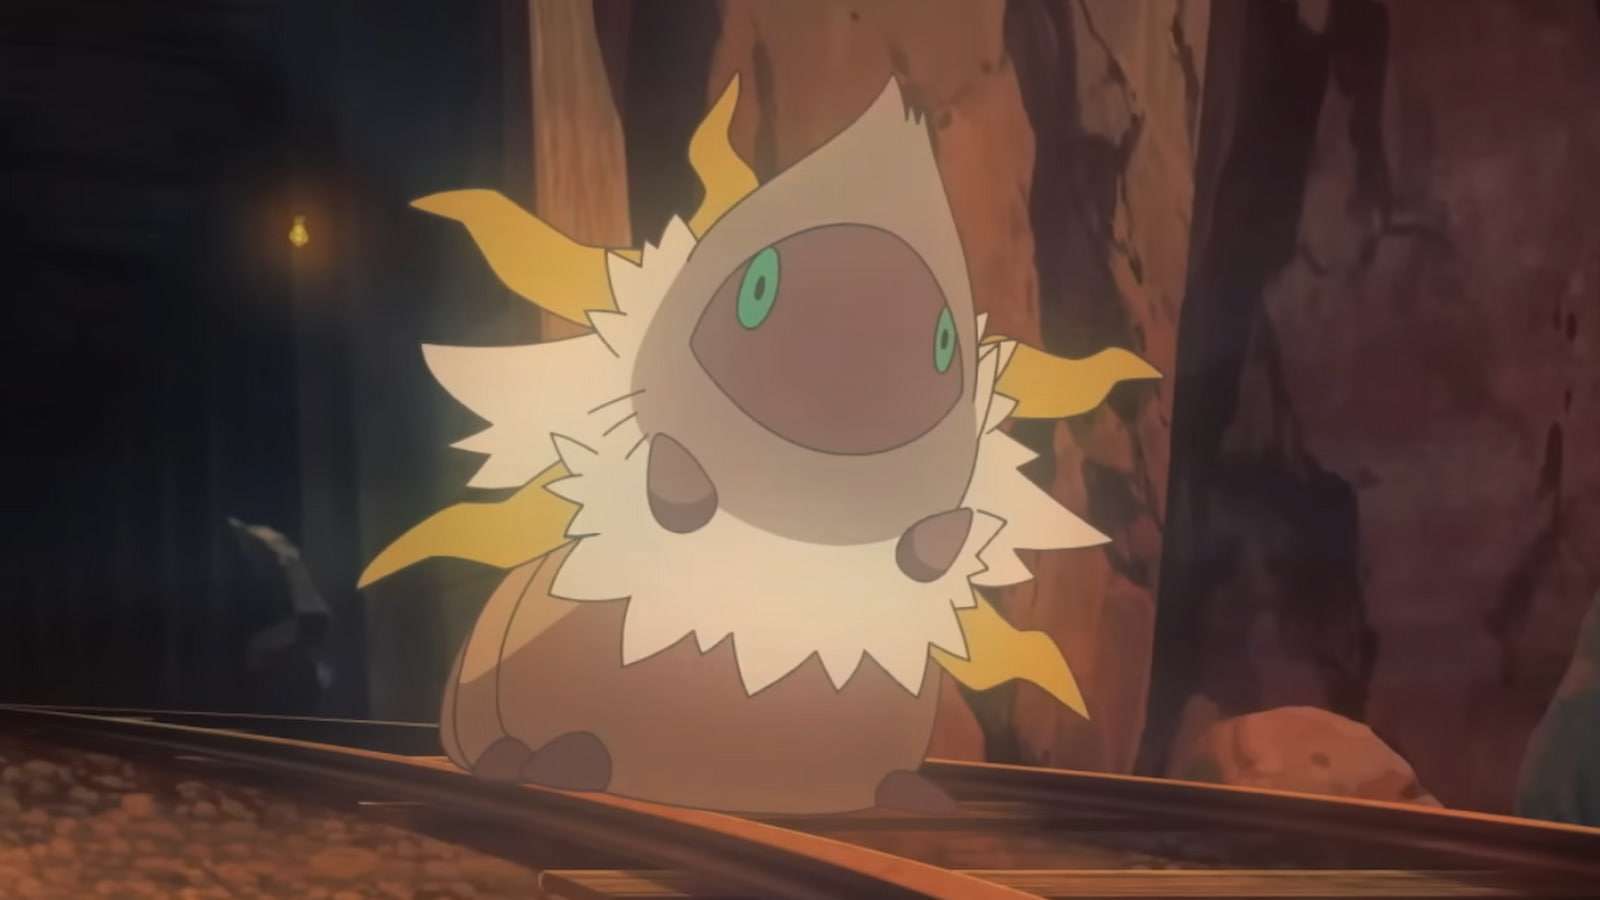 Shiny Larvesta evolving in the Pokemon anime